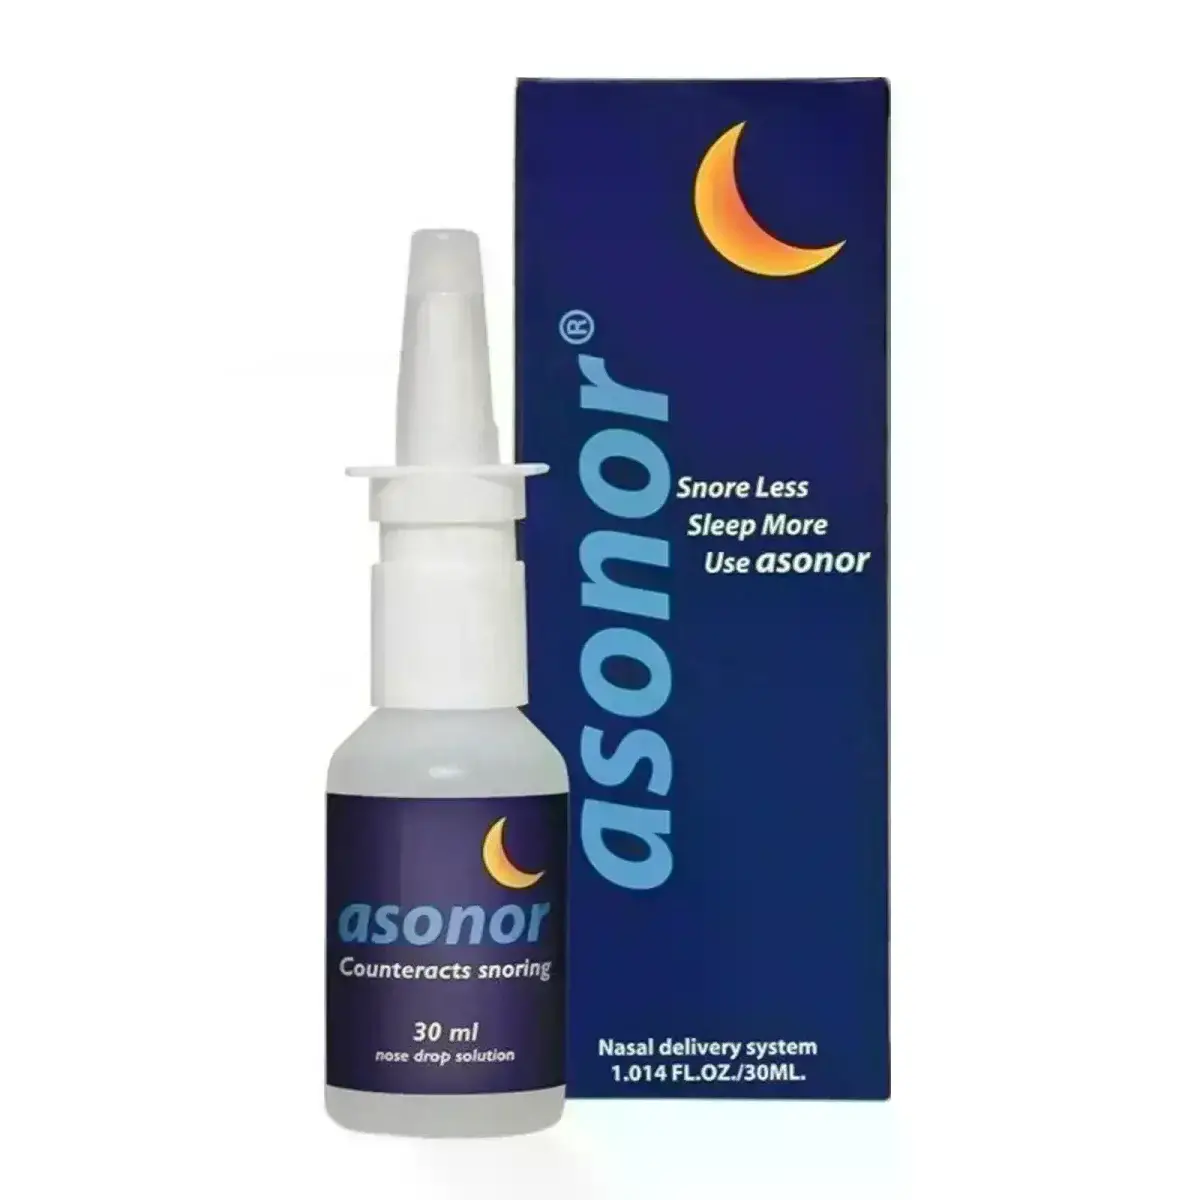 Asonor Nasal Spray 30 Ml For Snoring